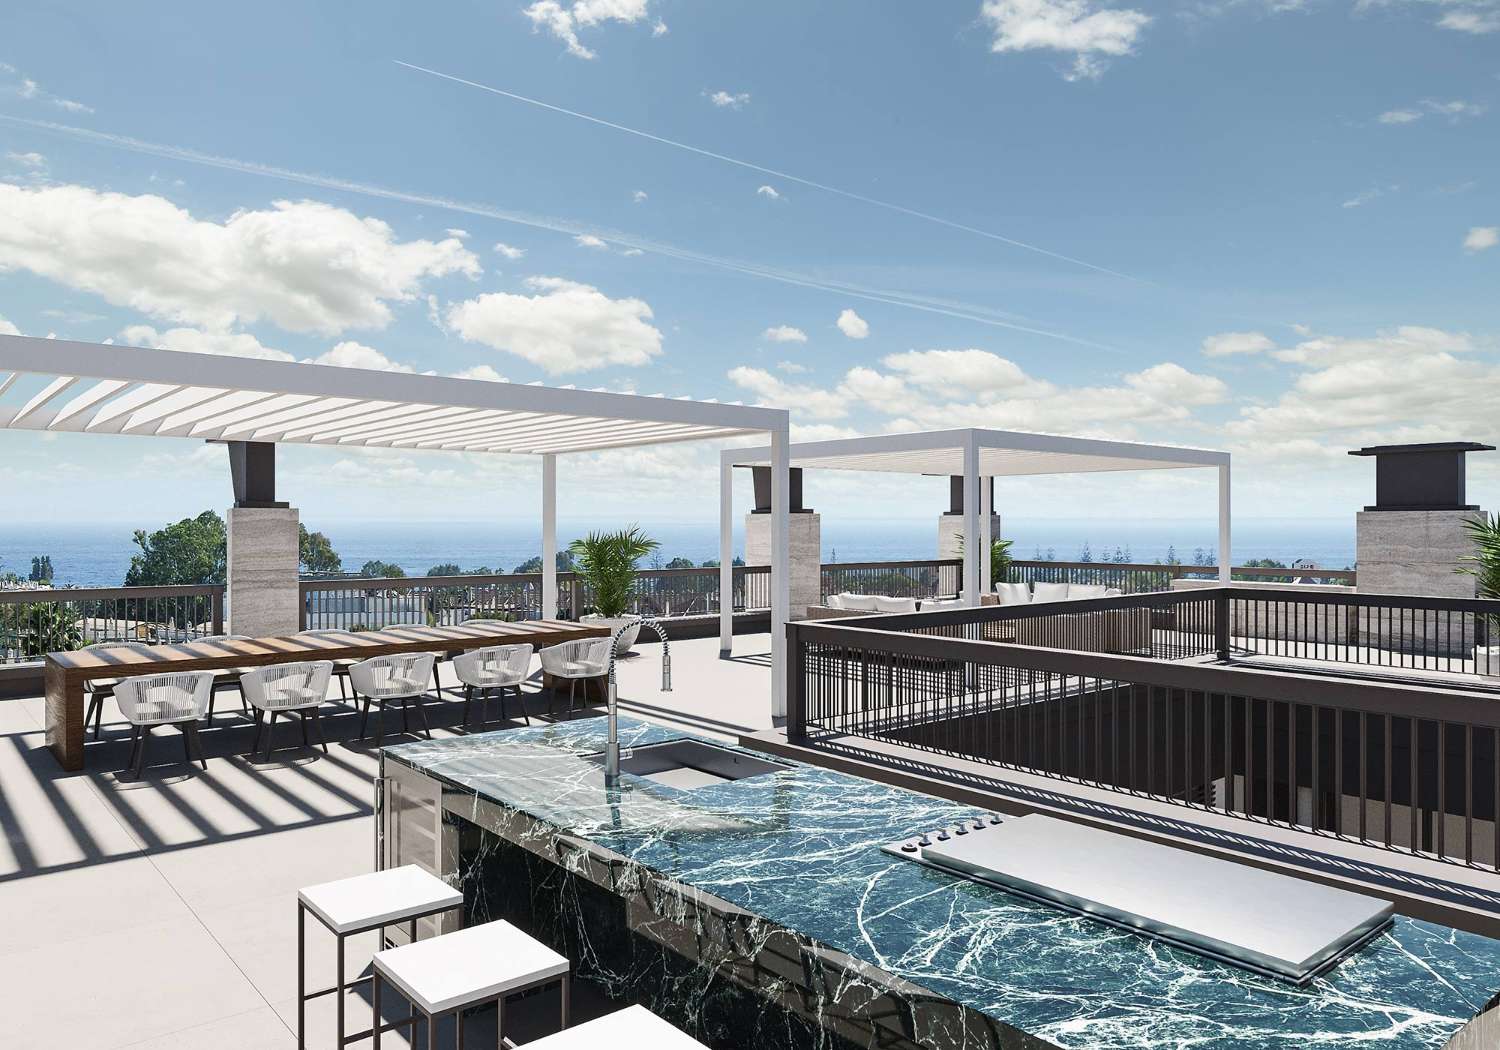 Exclusive luxury villas very close to Puerto Banús, Marbella!